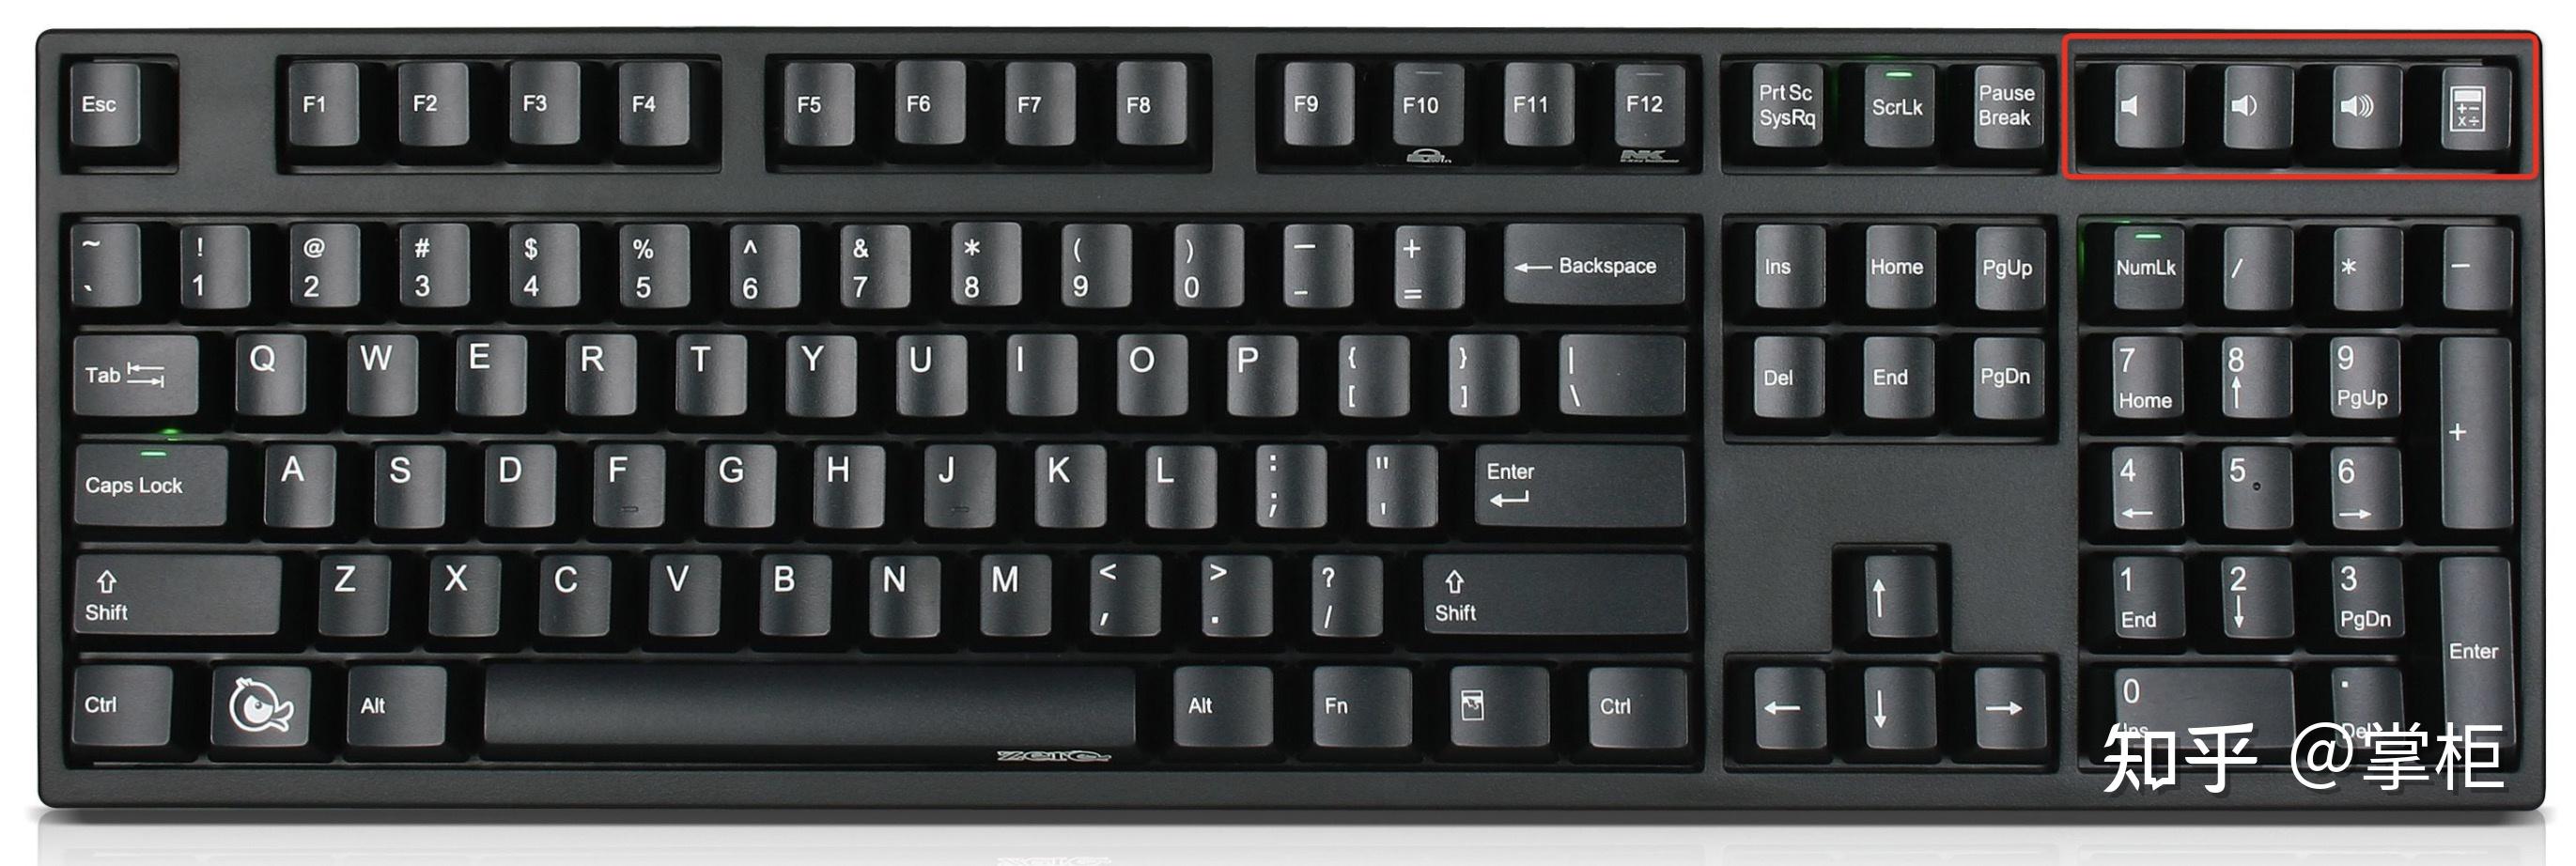 键盘键位图108图片